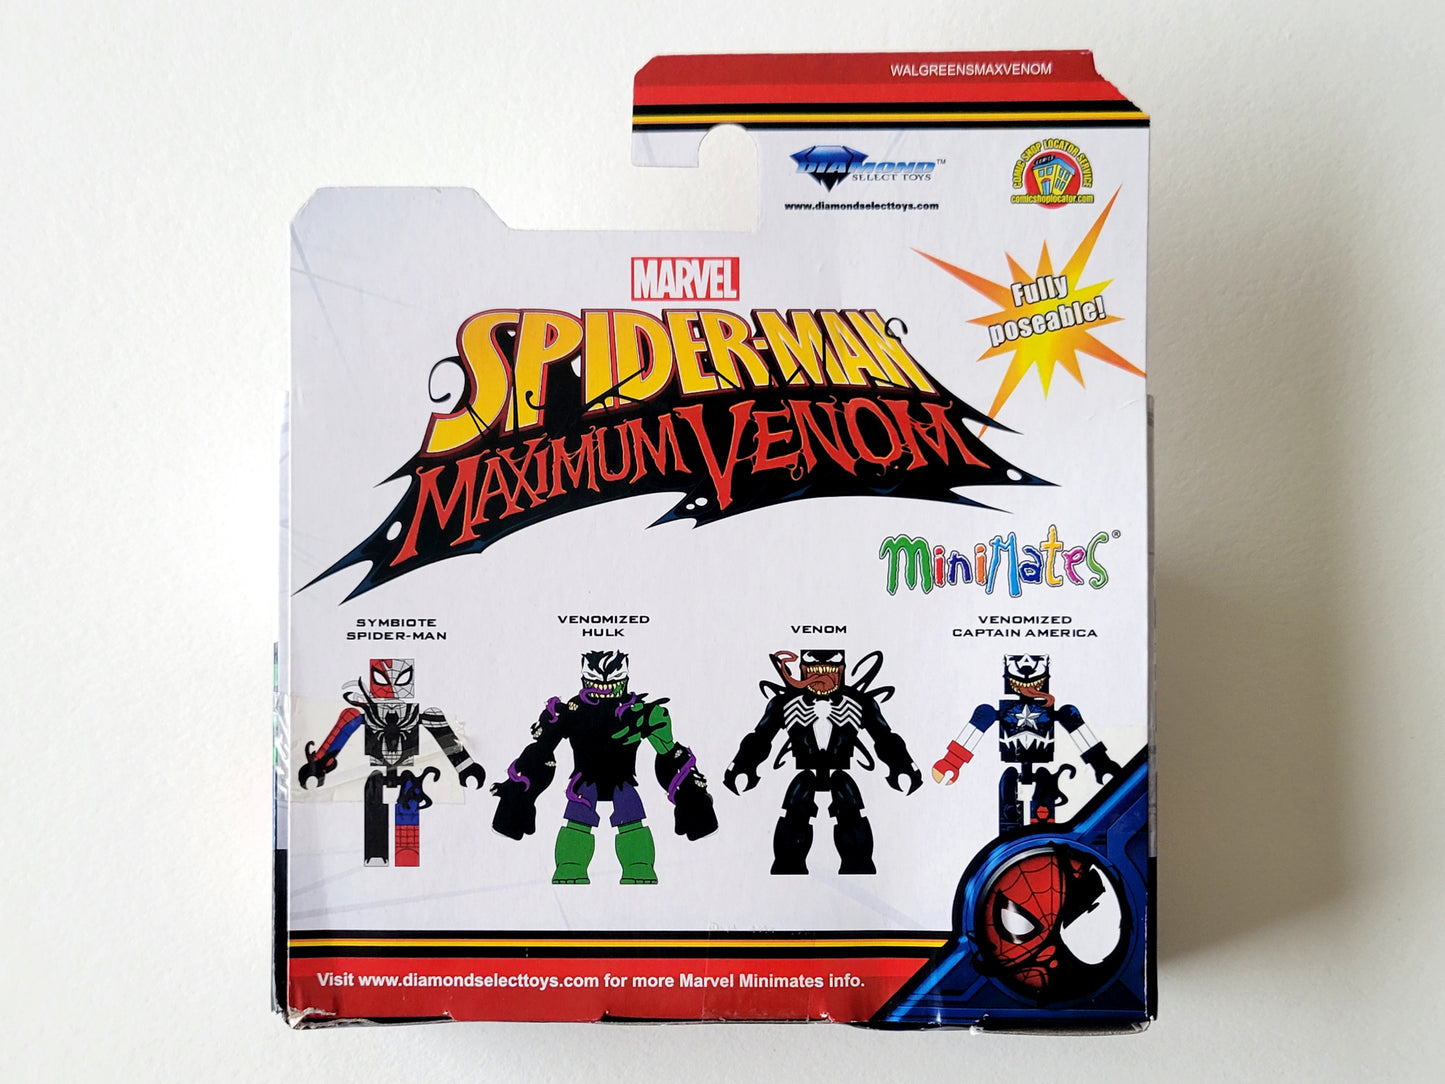 Spider-Man Maximum Venom Minimates Exclusive Symbiote Spider-Man & Venomized Hulk Action Figures